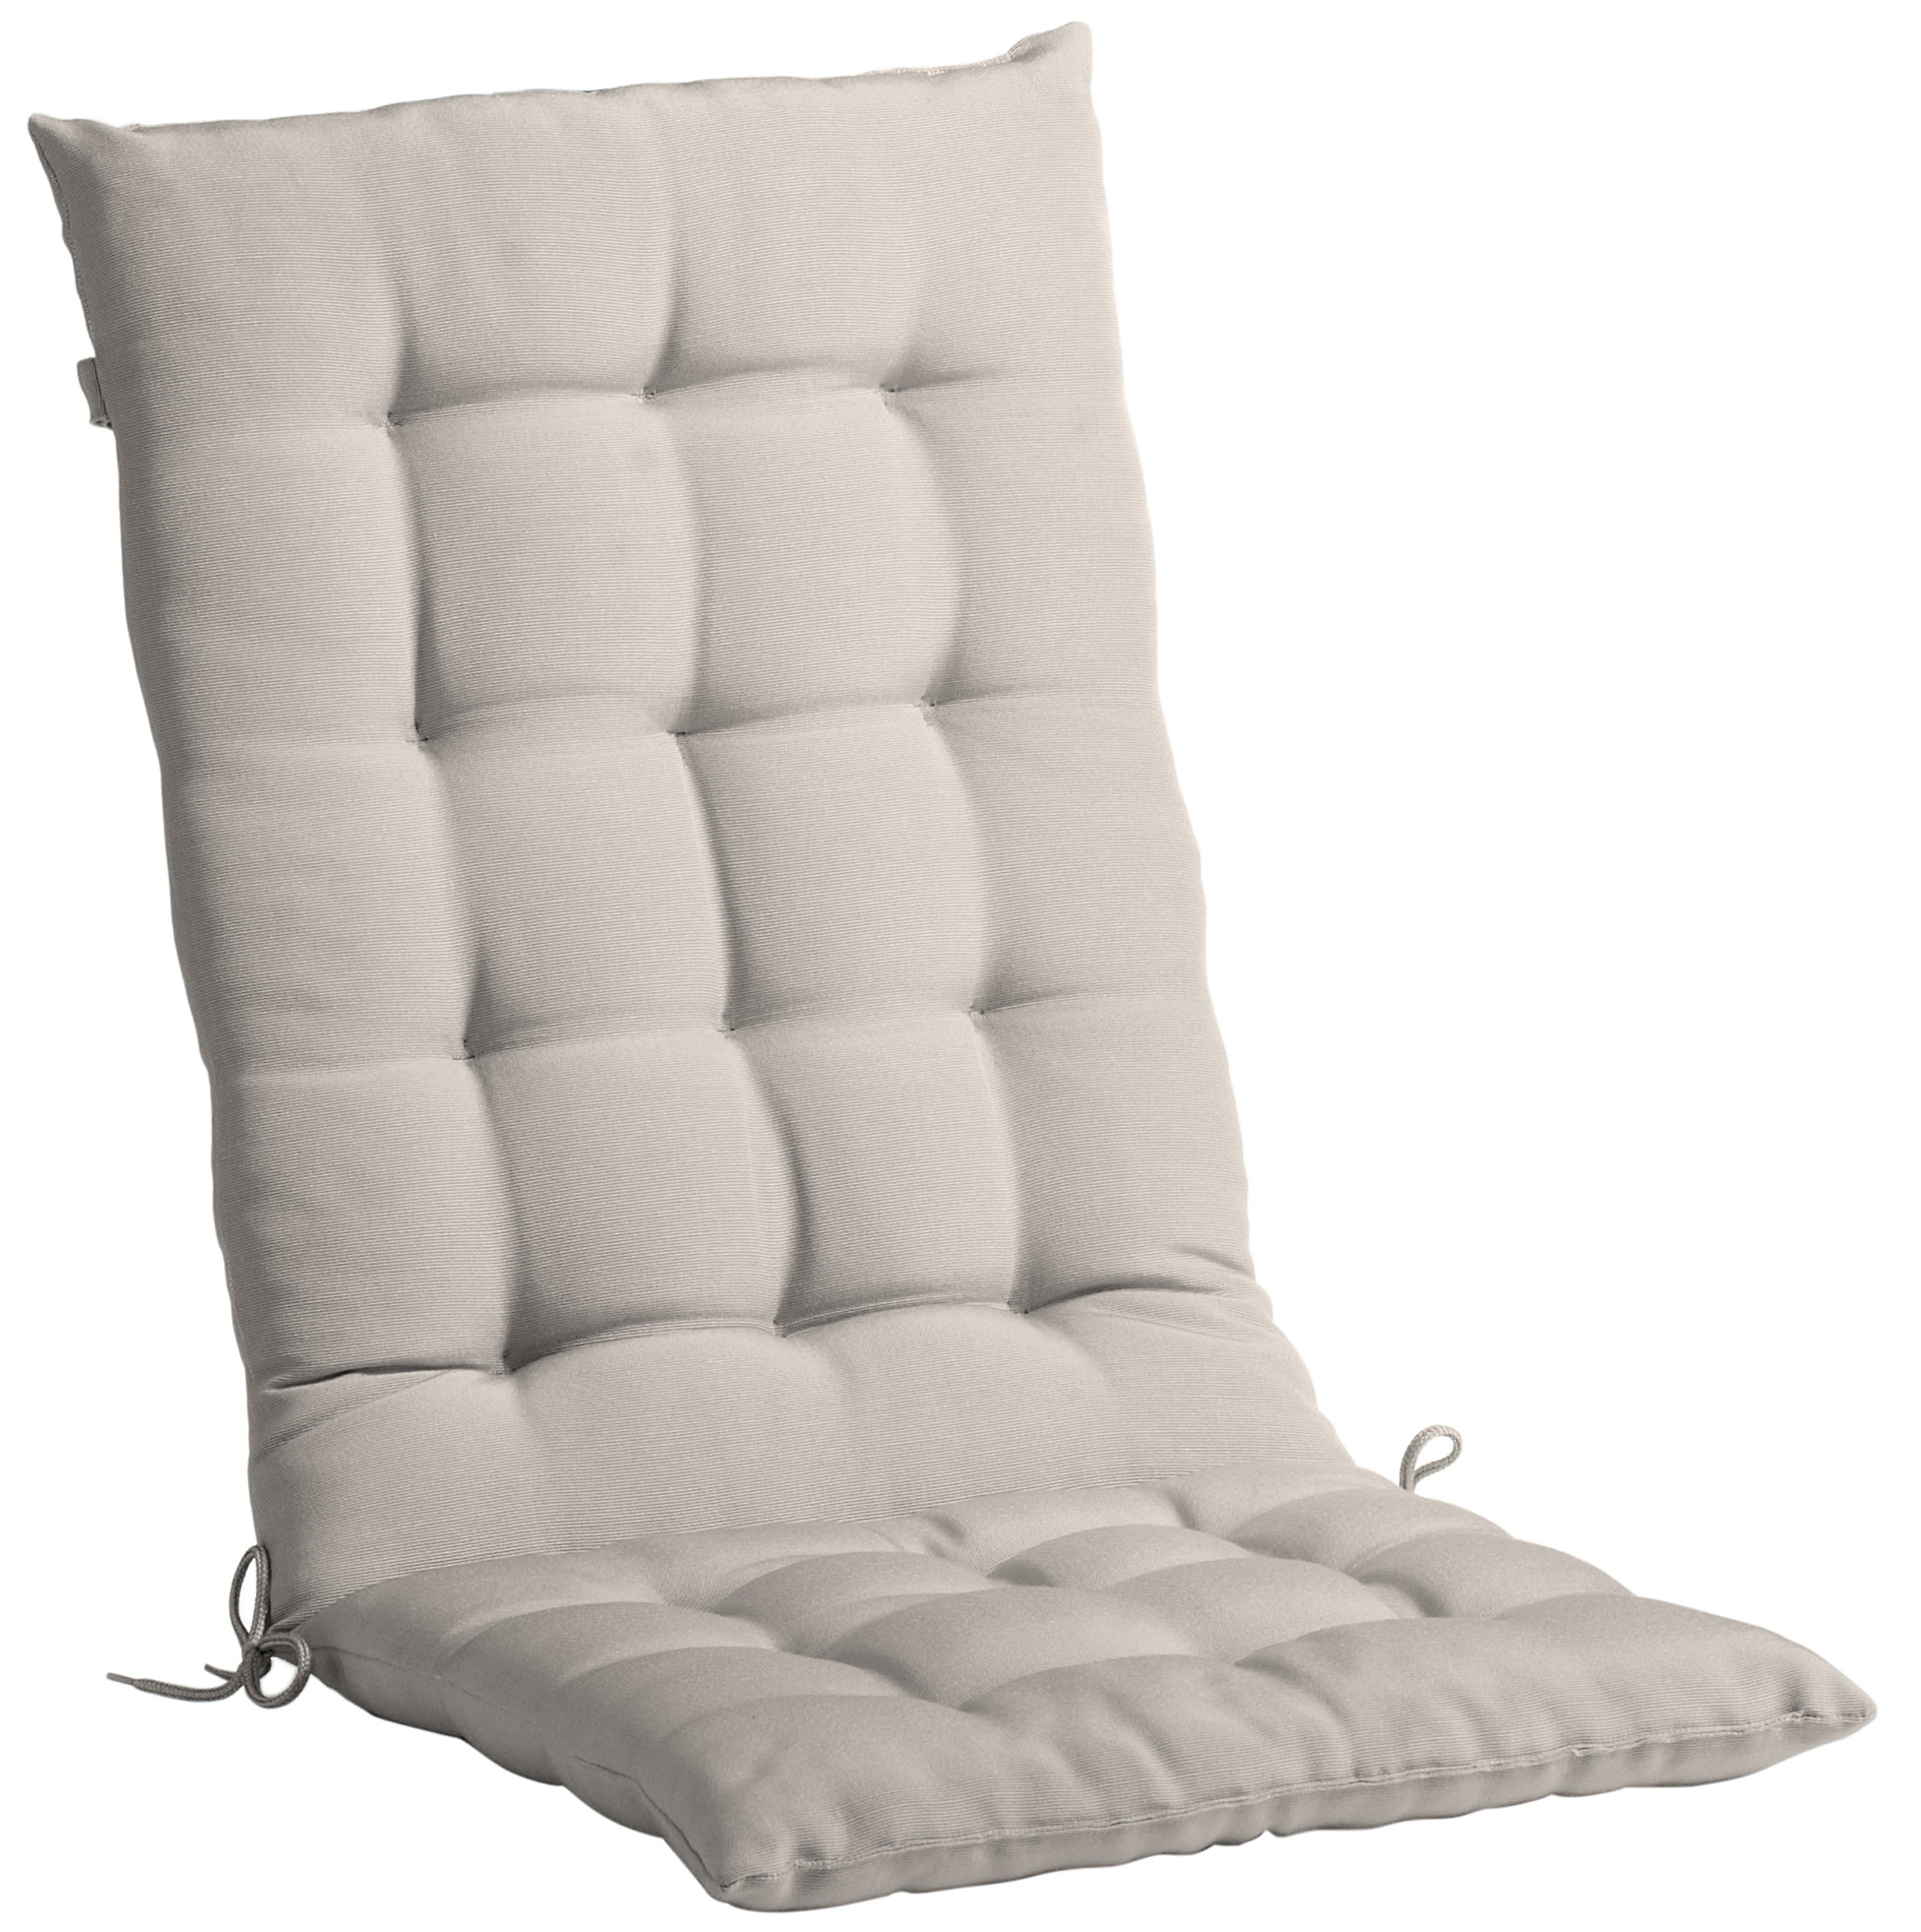 Ikea Chair Cushions Australia Home Design Ideas